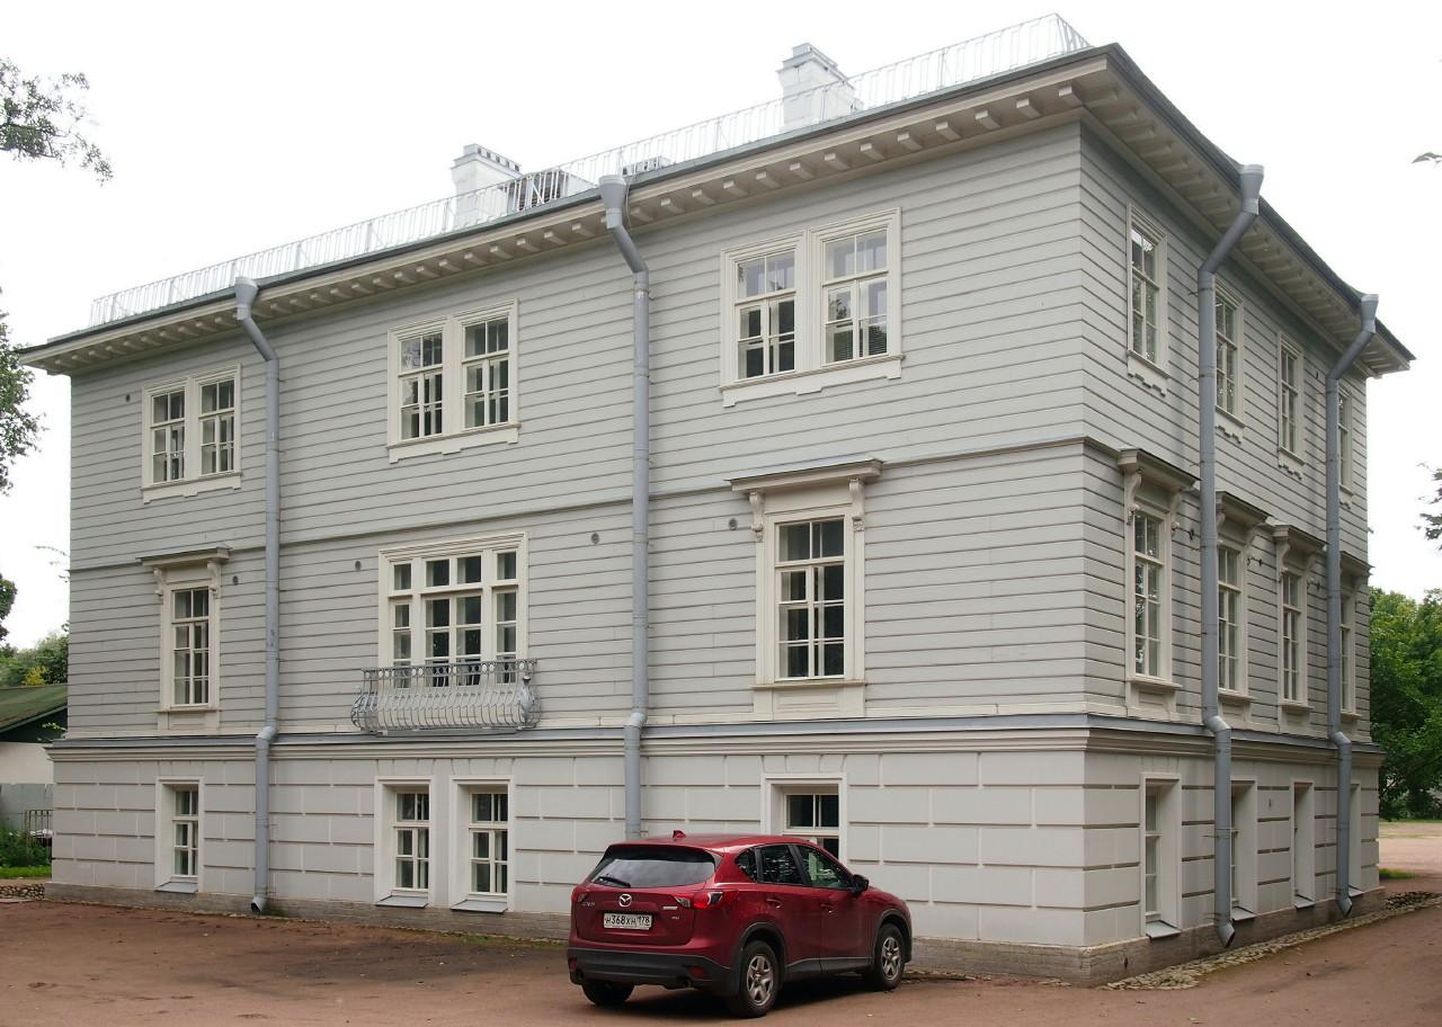 Sellises majas Jelagini saare pargikompleksis elas 19. sajandil oma perega Pärnust pärit aednik Johann Bueck.